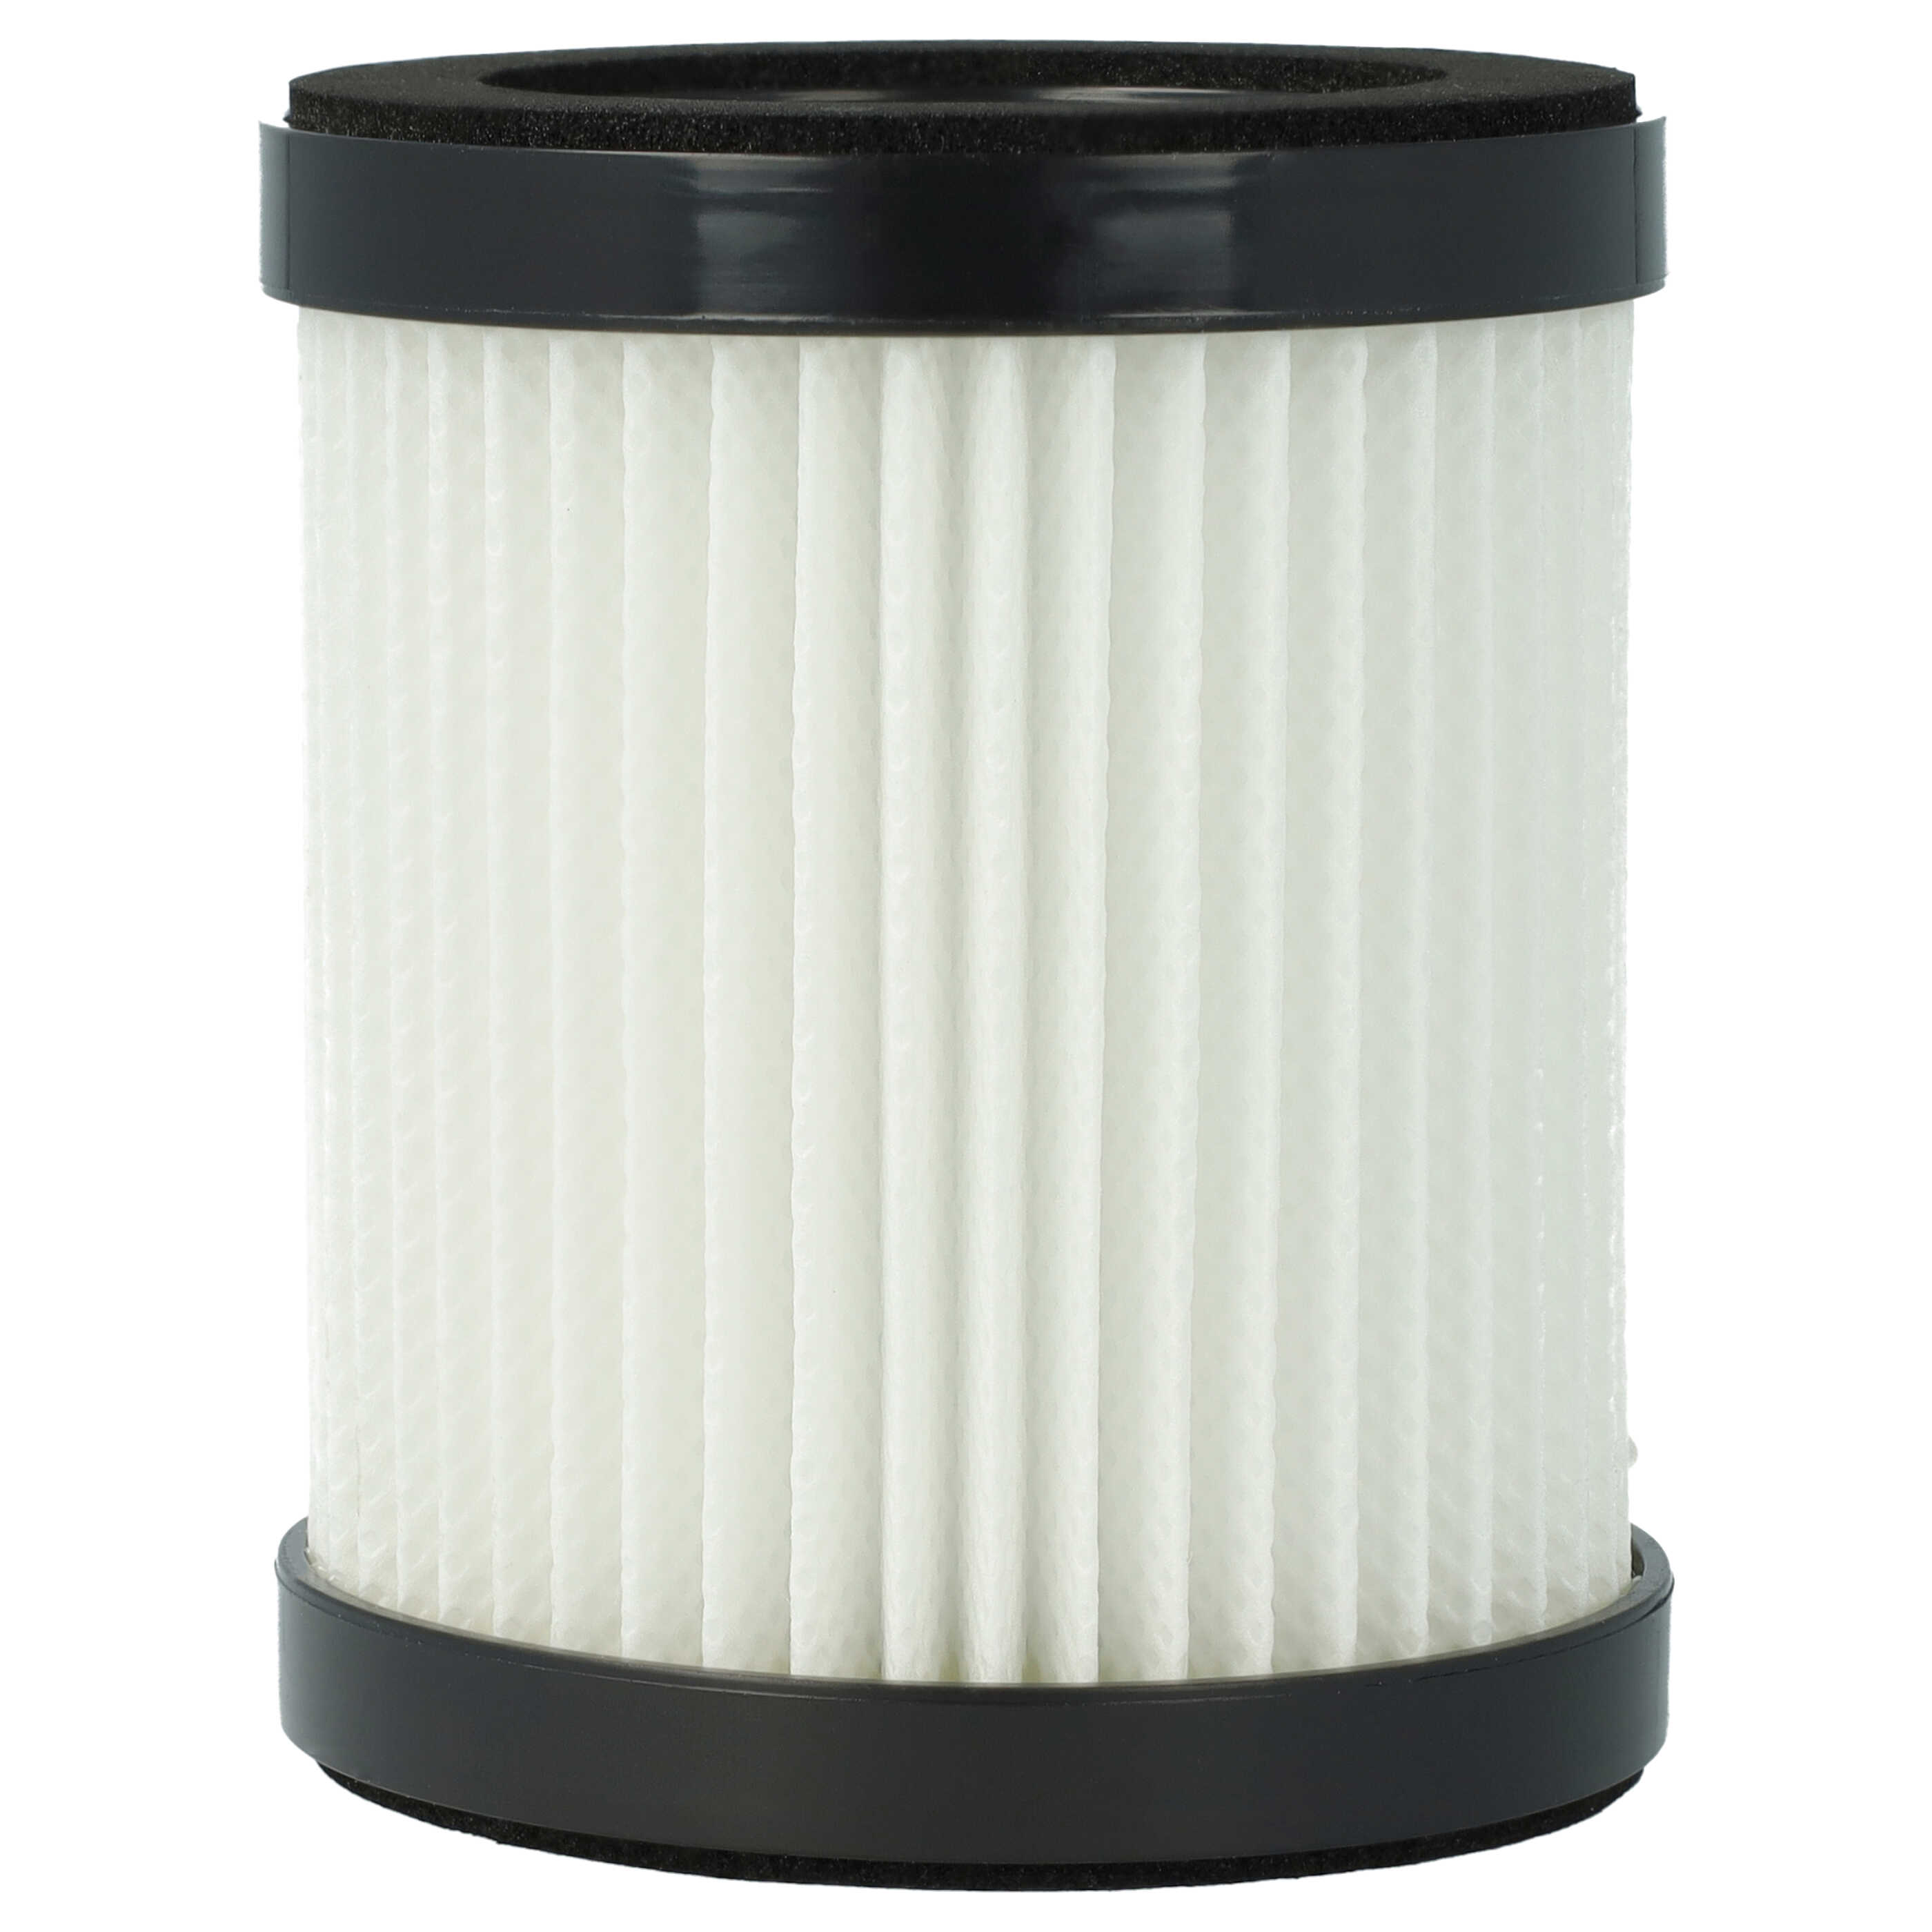 Filter passend für Moosoo, Beldray XL-618A Staubsauger